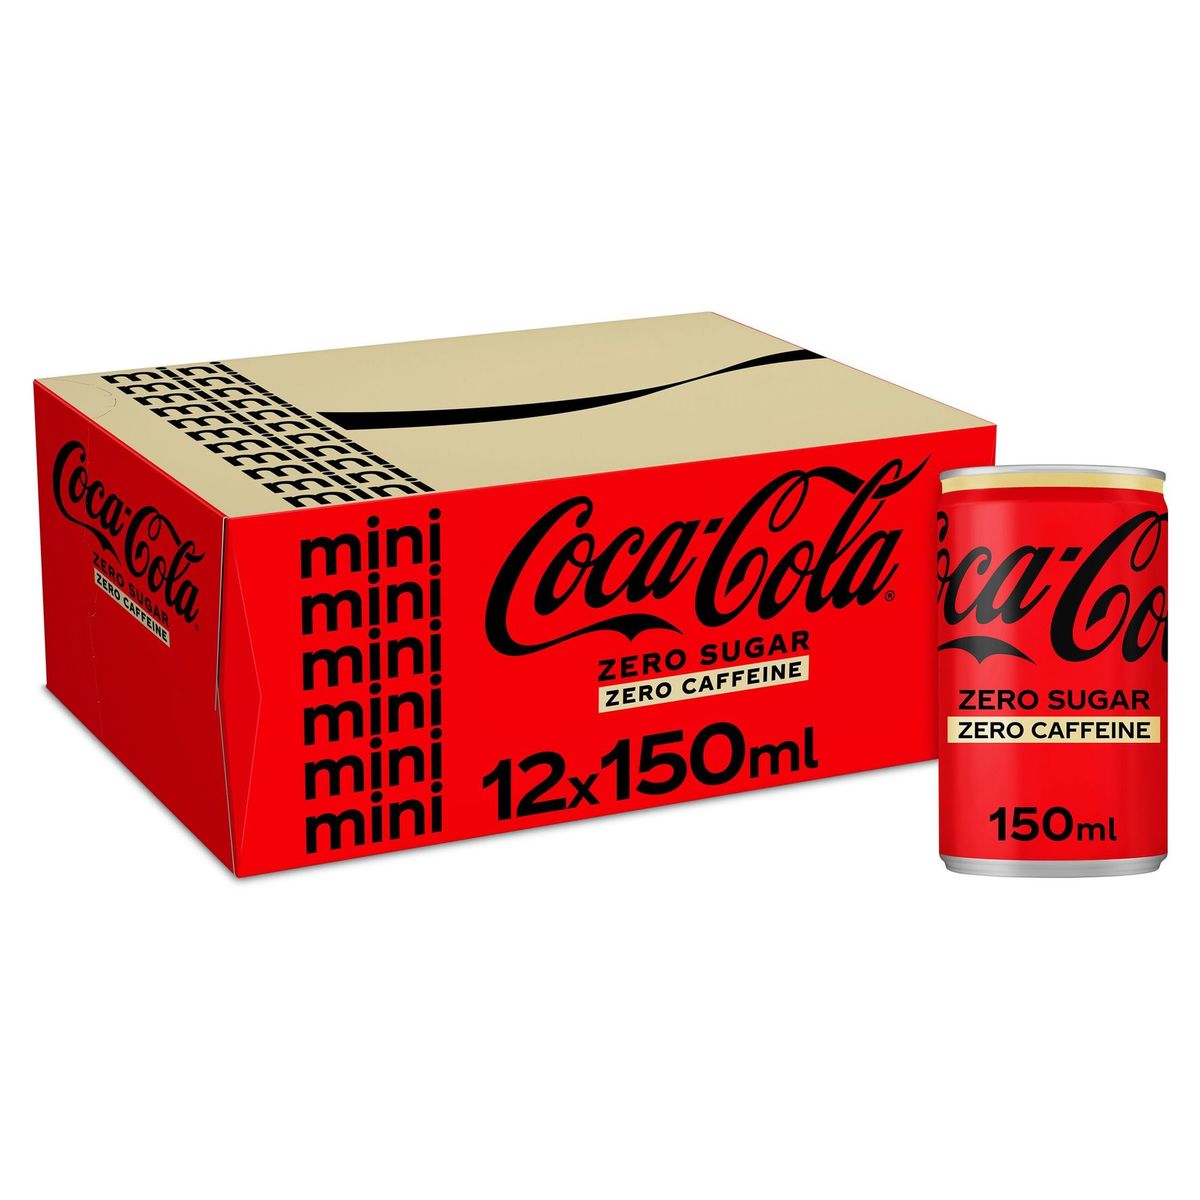 Coca-Cola Zero Caffeine Free Coke Soft drink Canette 12 x 150 ml